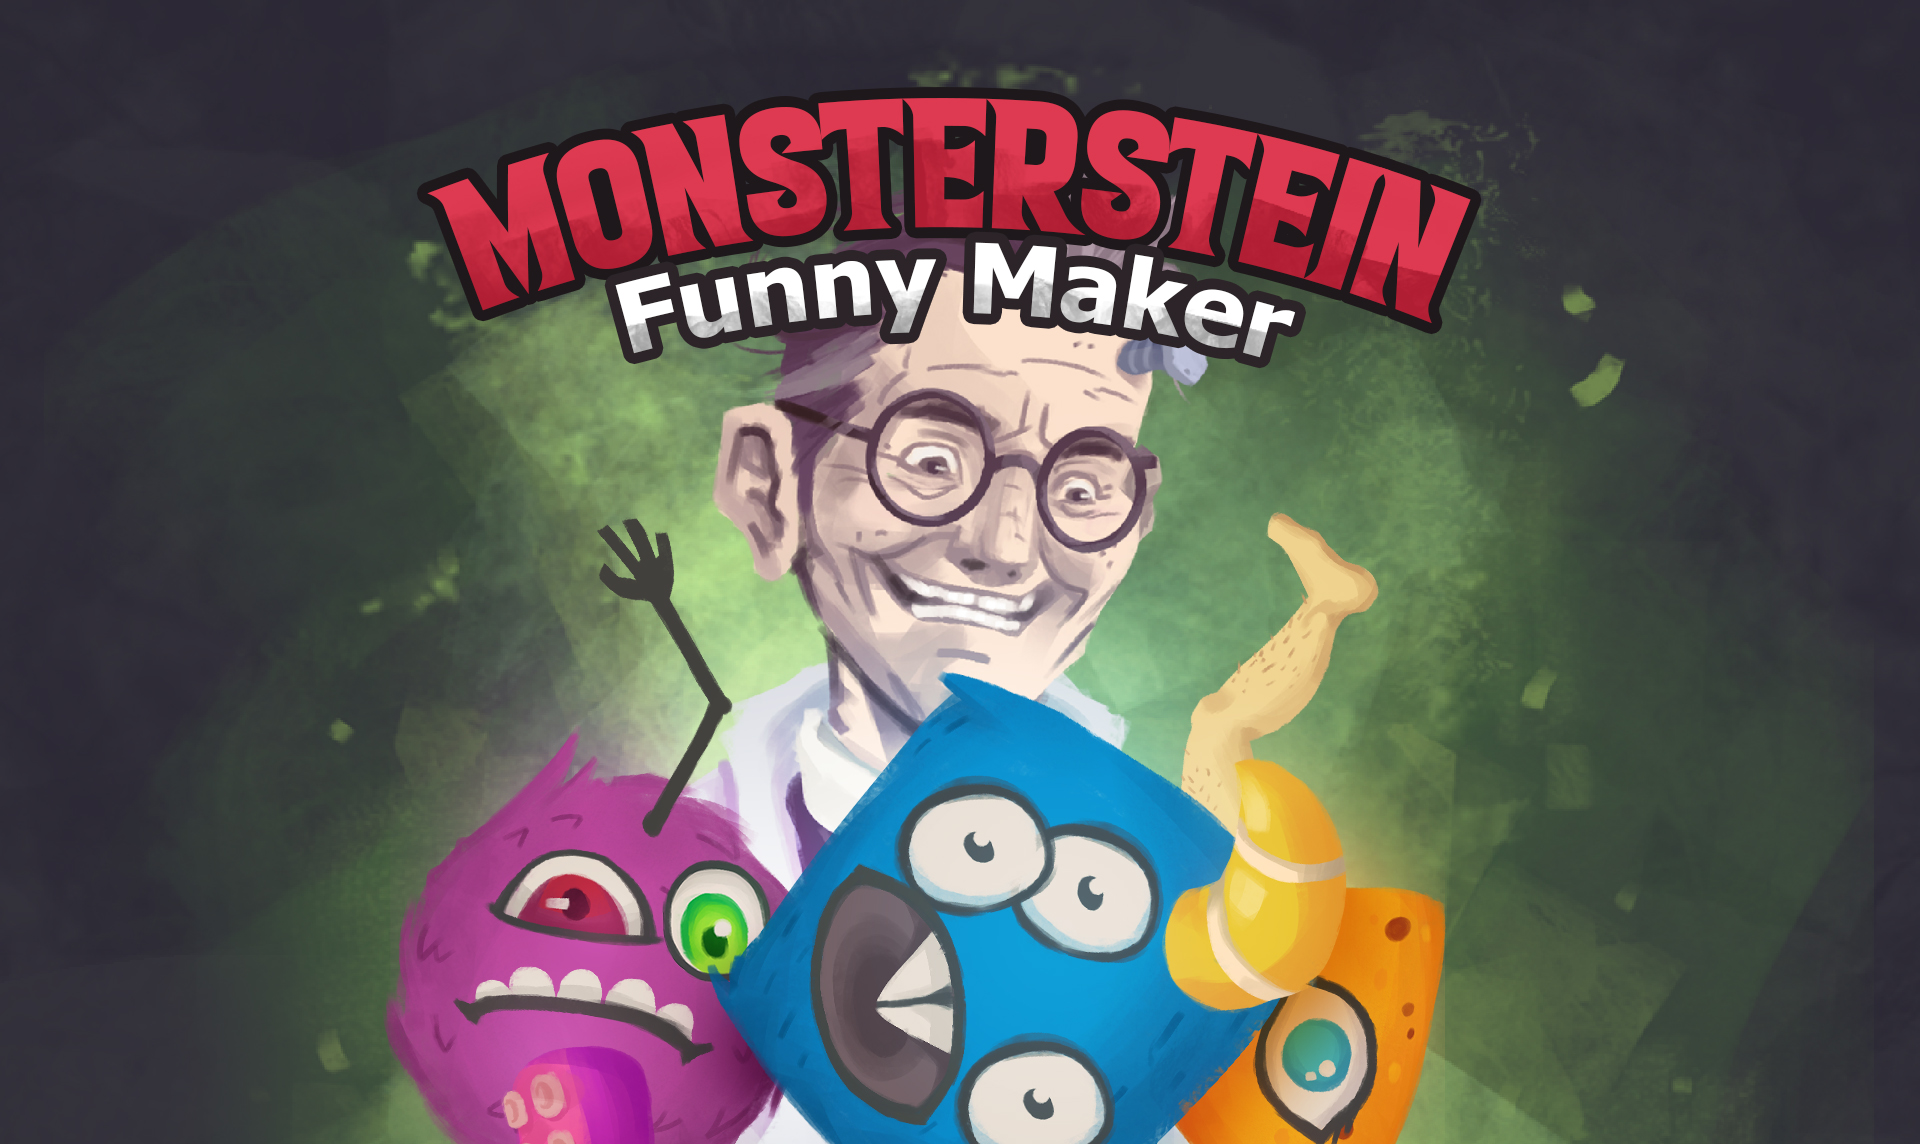 Monsterstein Funny Maker